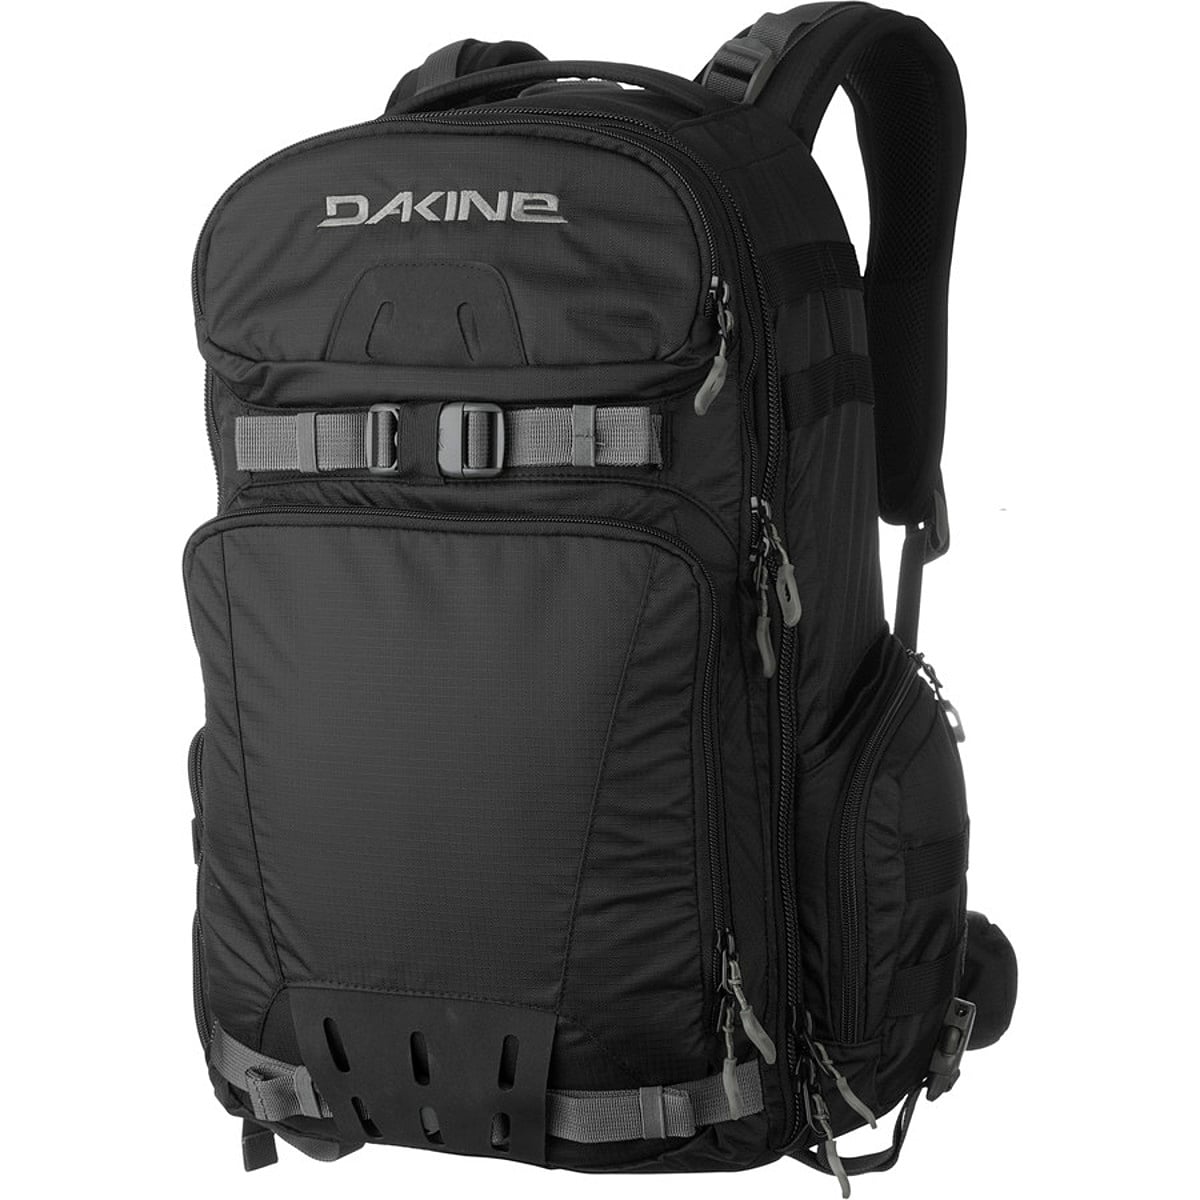 DAKINE Reload 30L Camera Backpack | Backcountry.com